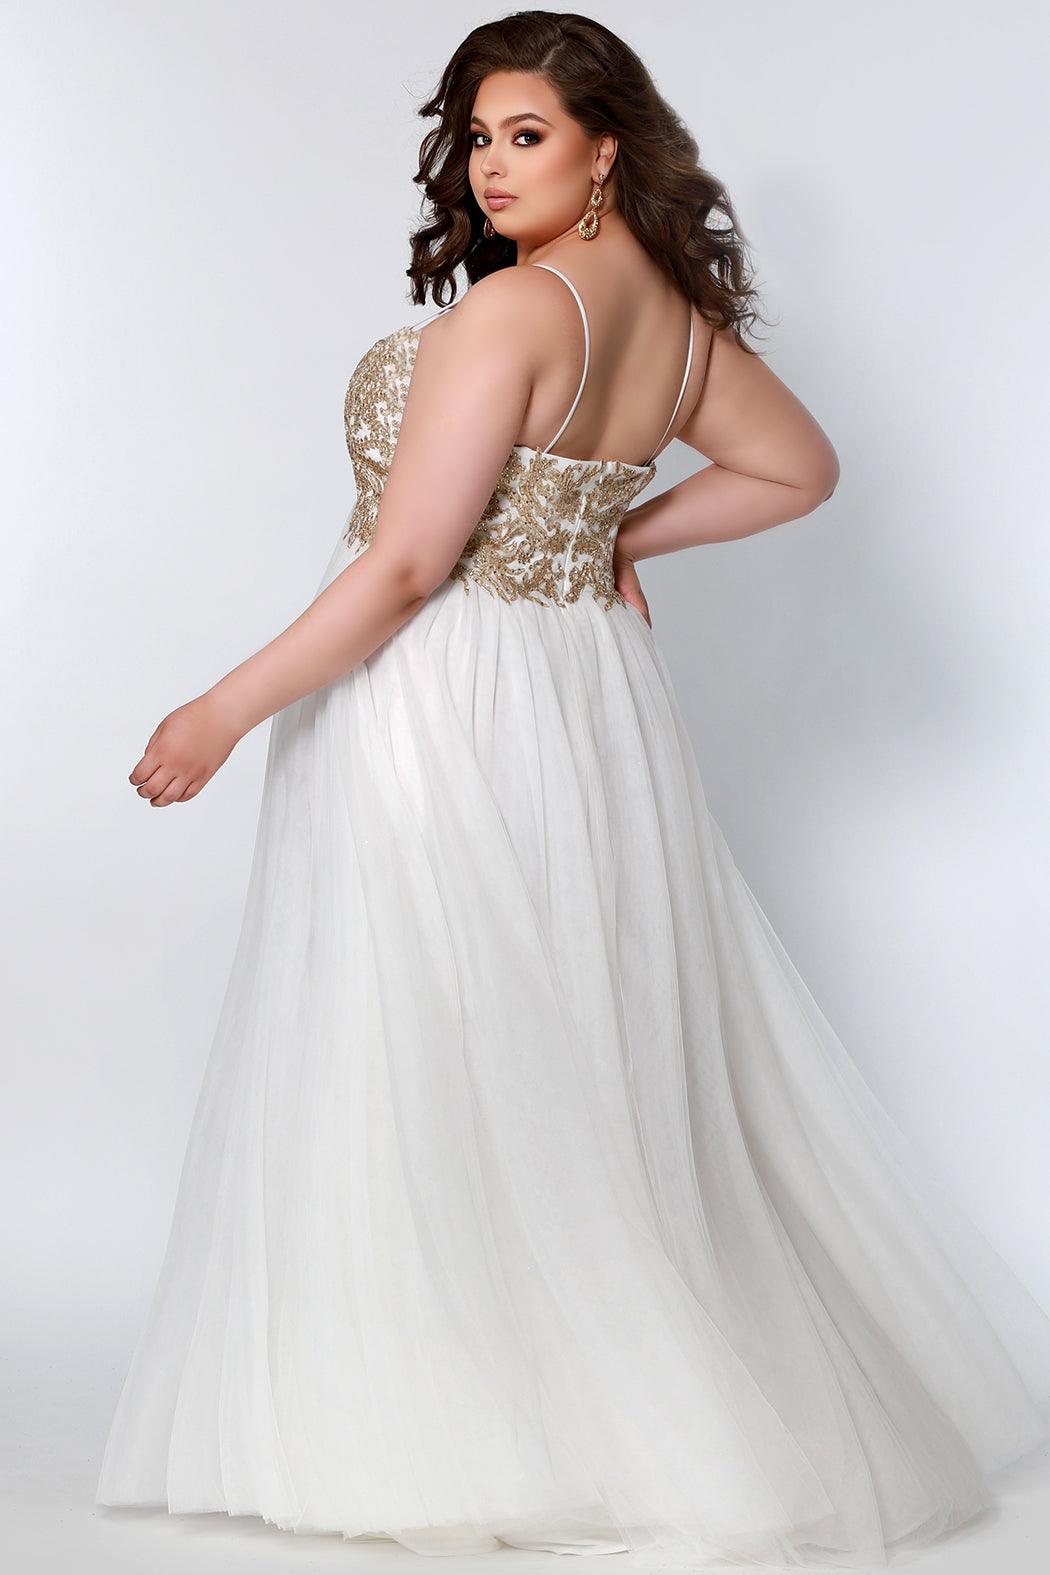  Short Sleeveless Plus Size Homecoming Prom Dress Ivory